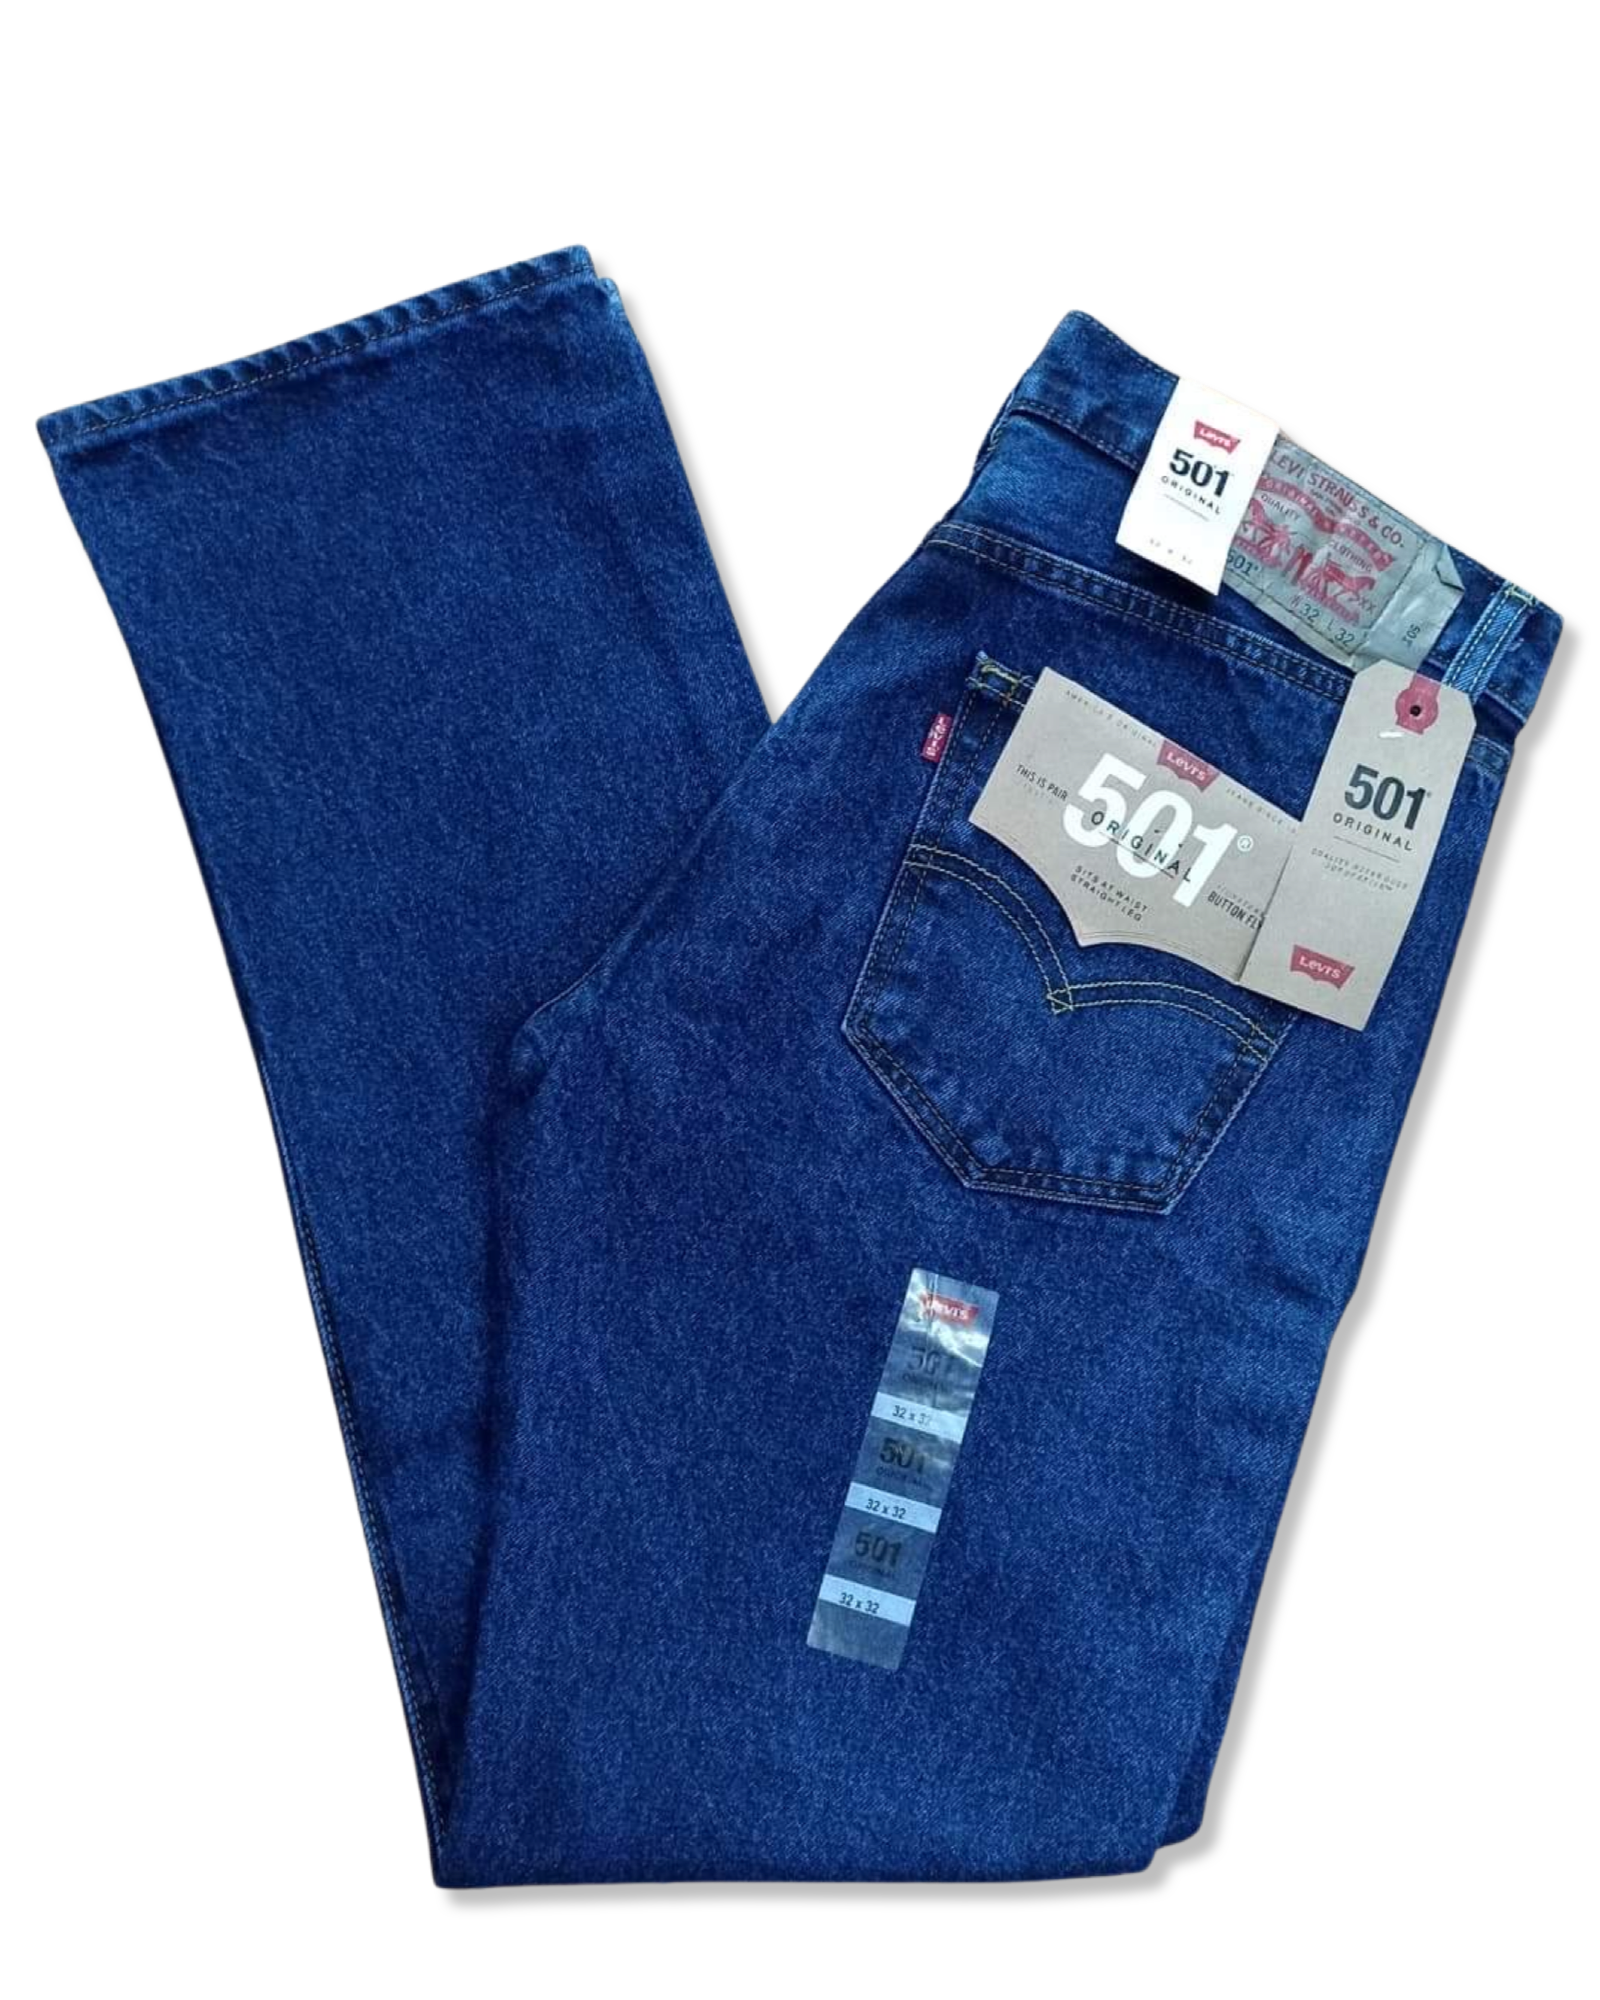 Pantalón LEVIS 501 color azul fuerte –